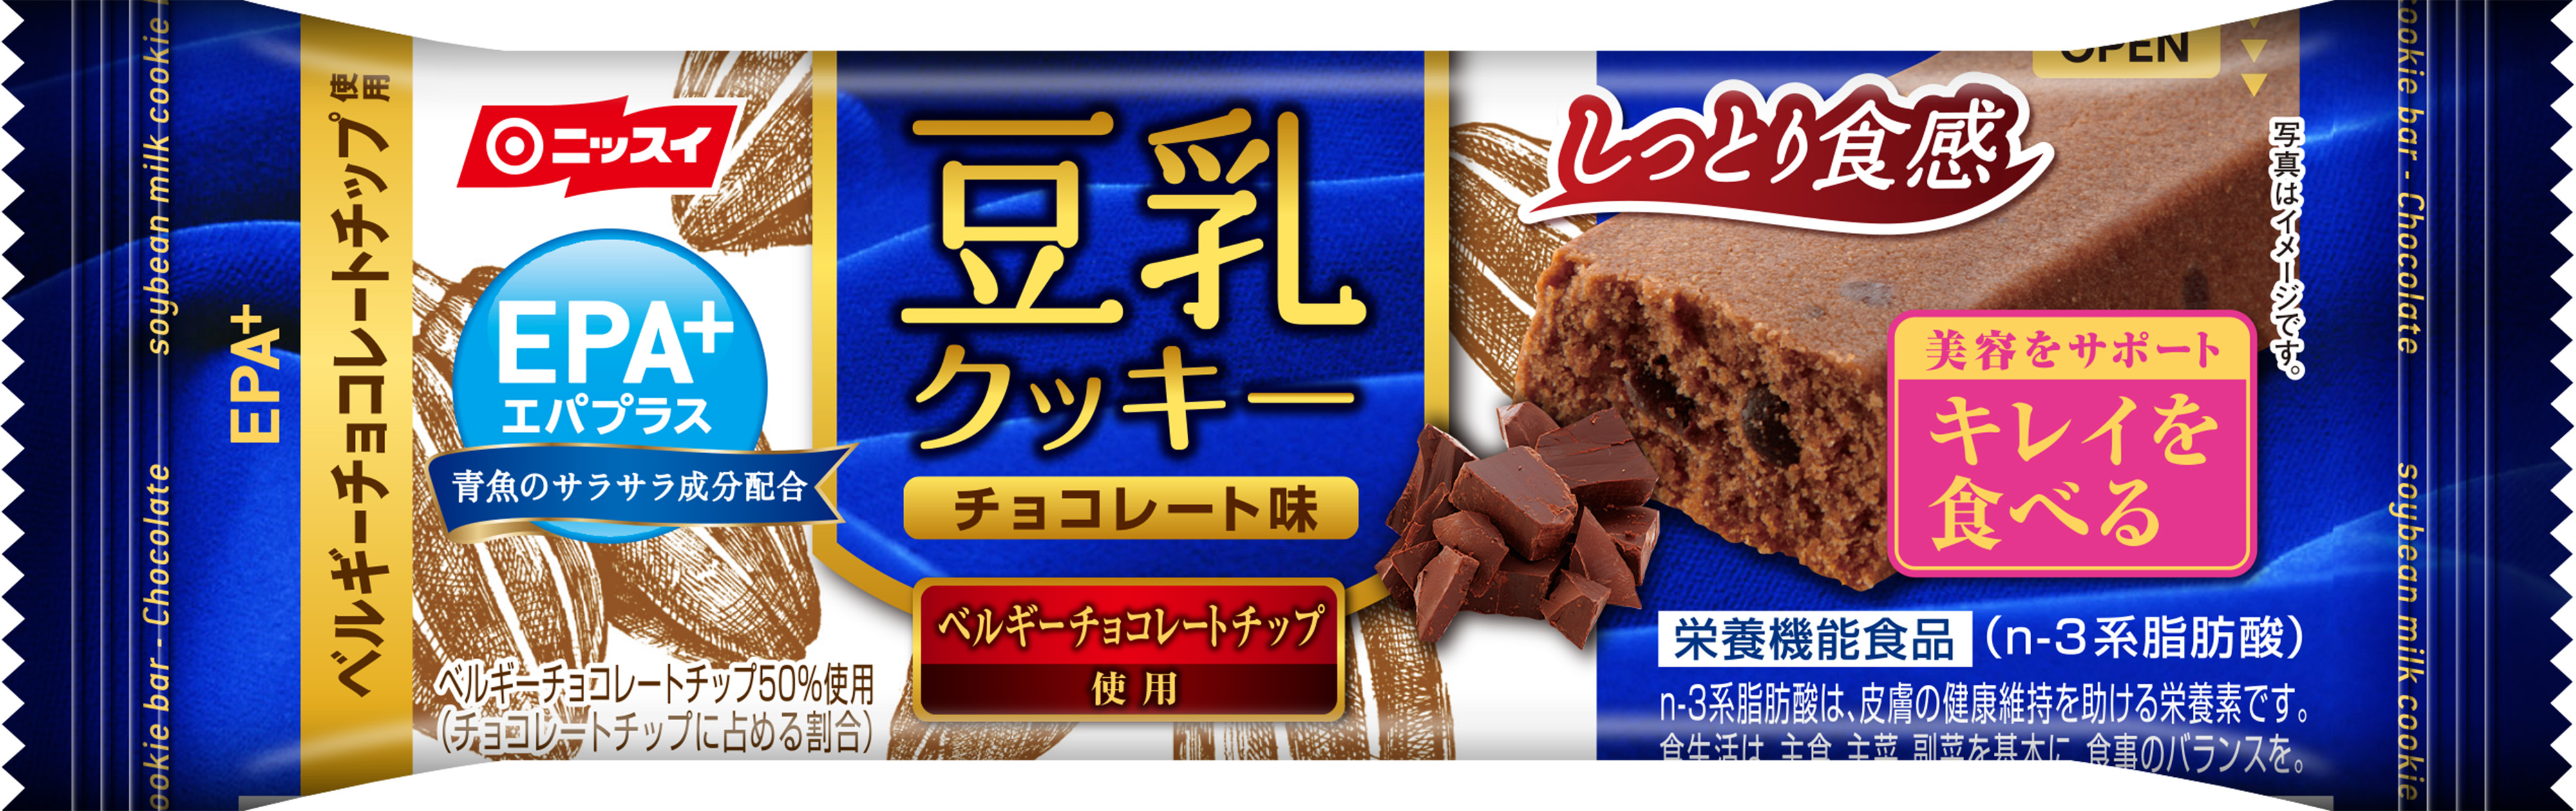 ニッスイ「EPA＋(エパプラス)豆乳クッキー」、渋谷でサンプリングイベント実施｜日本水産株式会社のプレスリリース